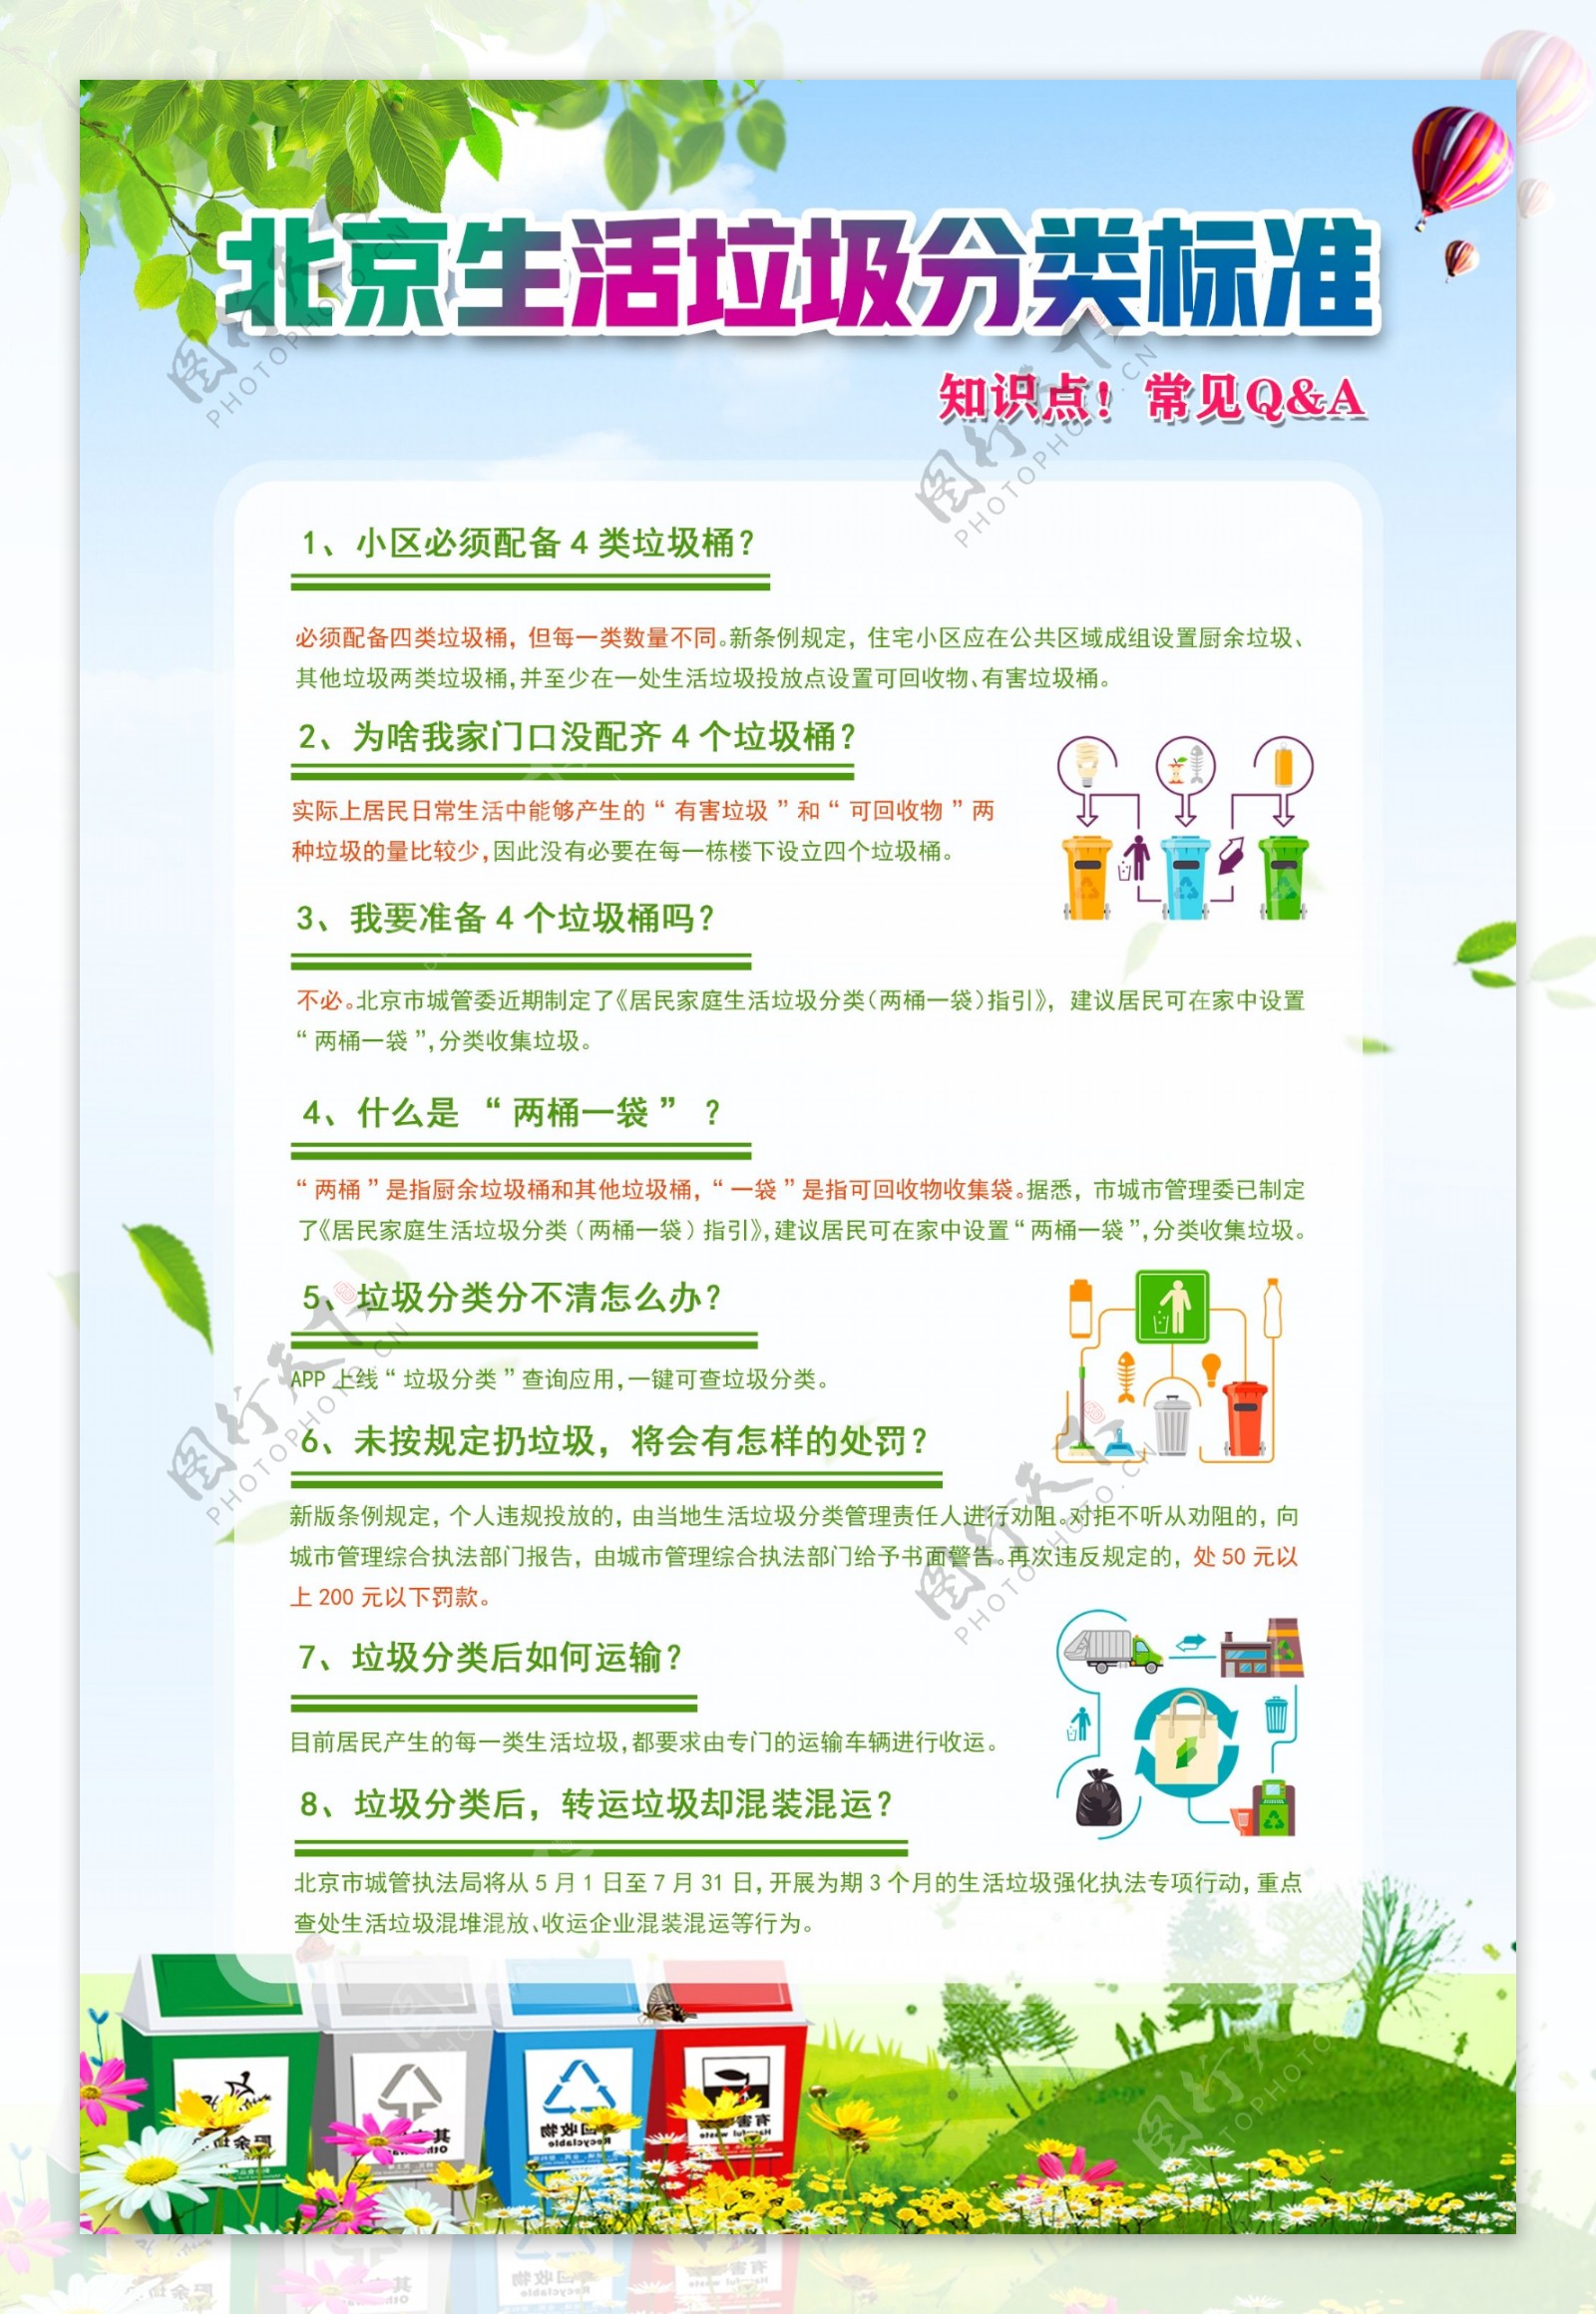 北京生活垃圾分类标准